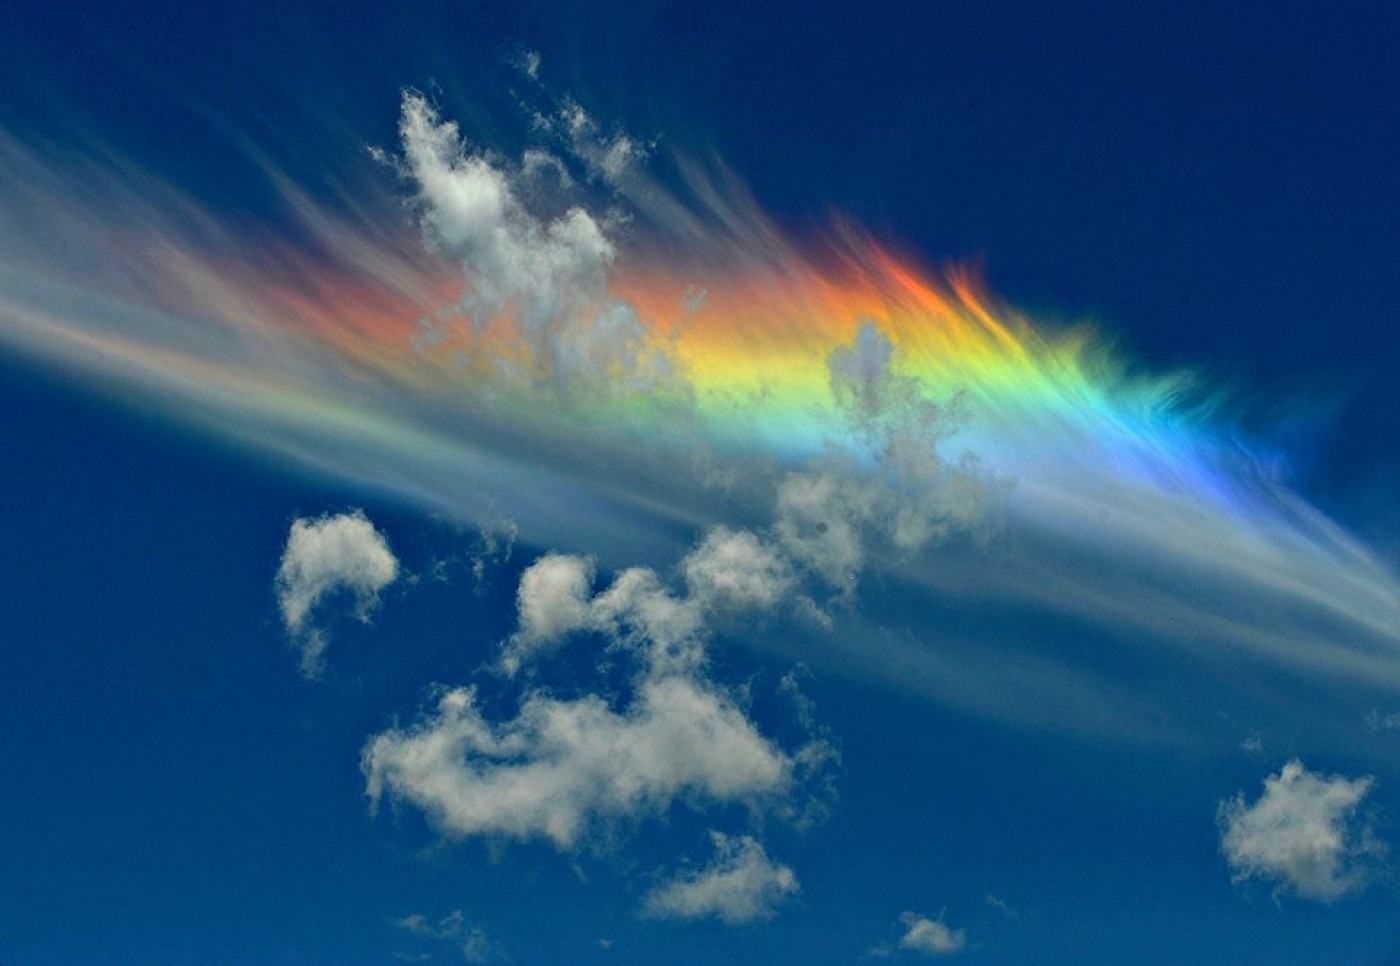 Жители города Авалон в США наблюдали горизонтальную радугу